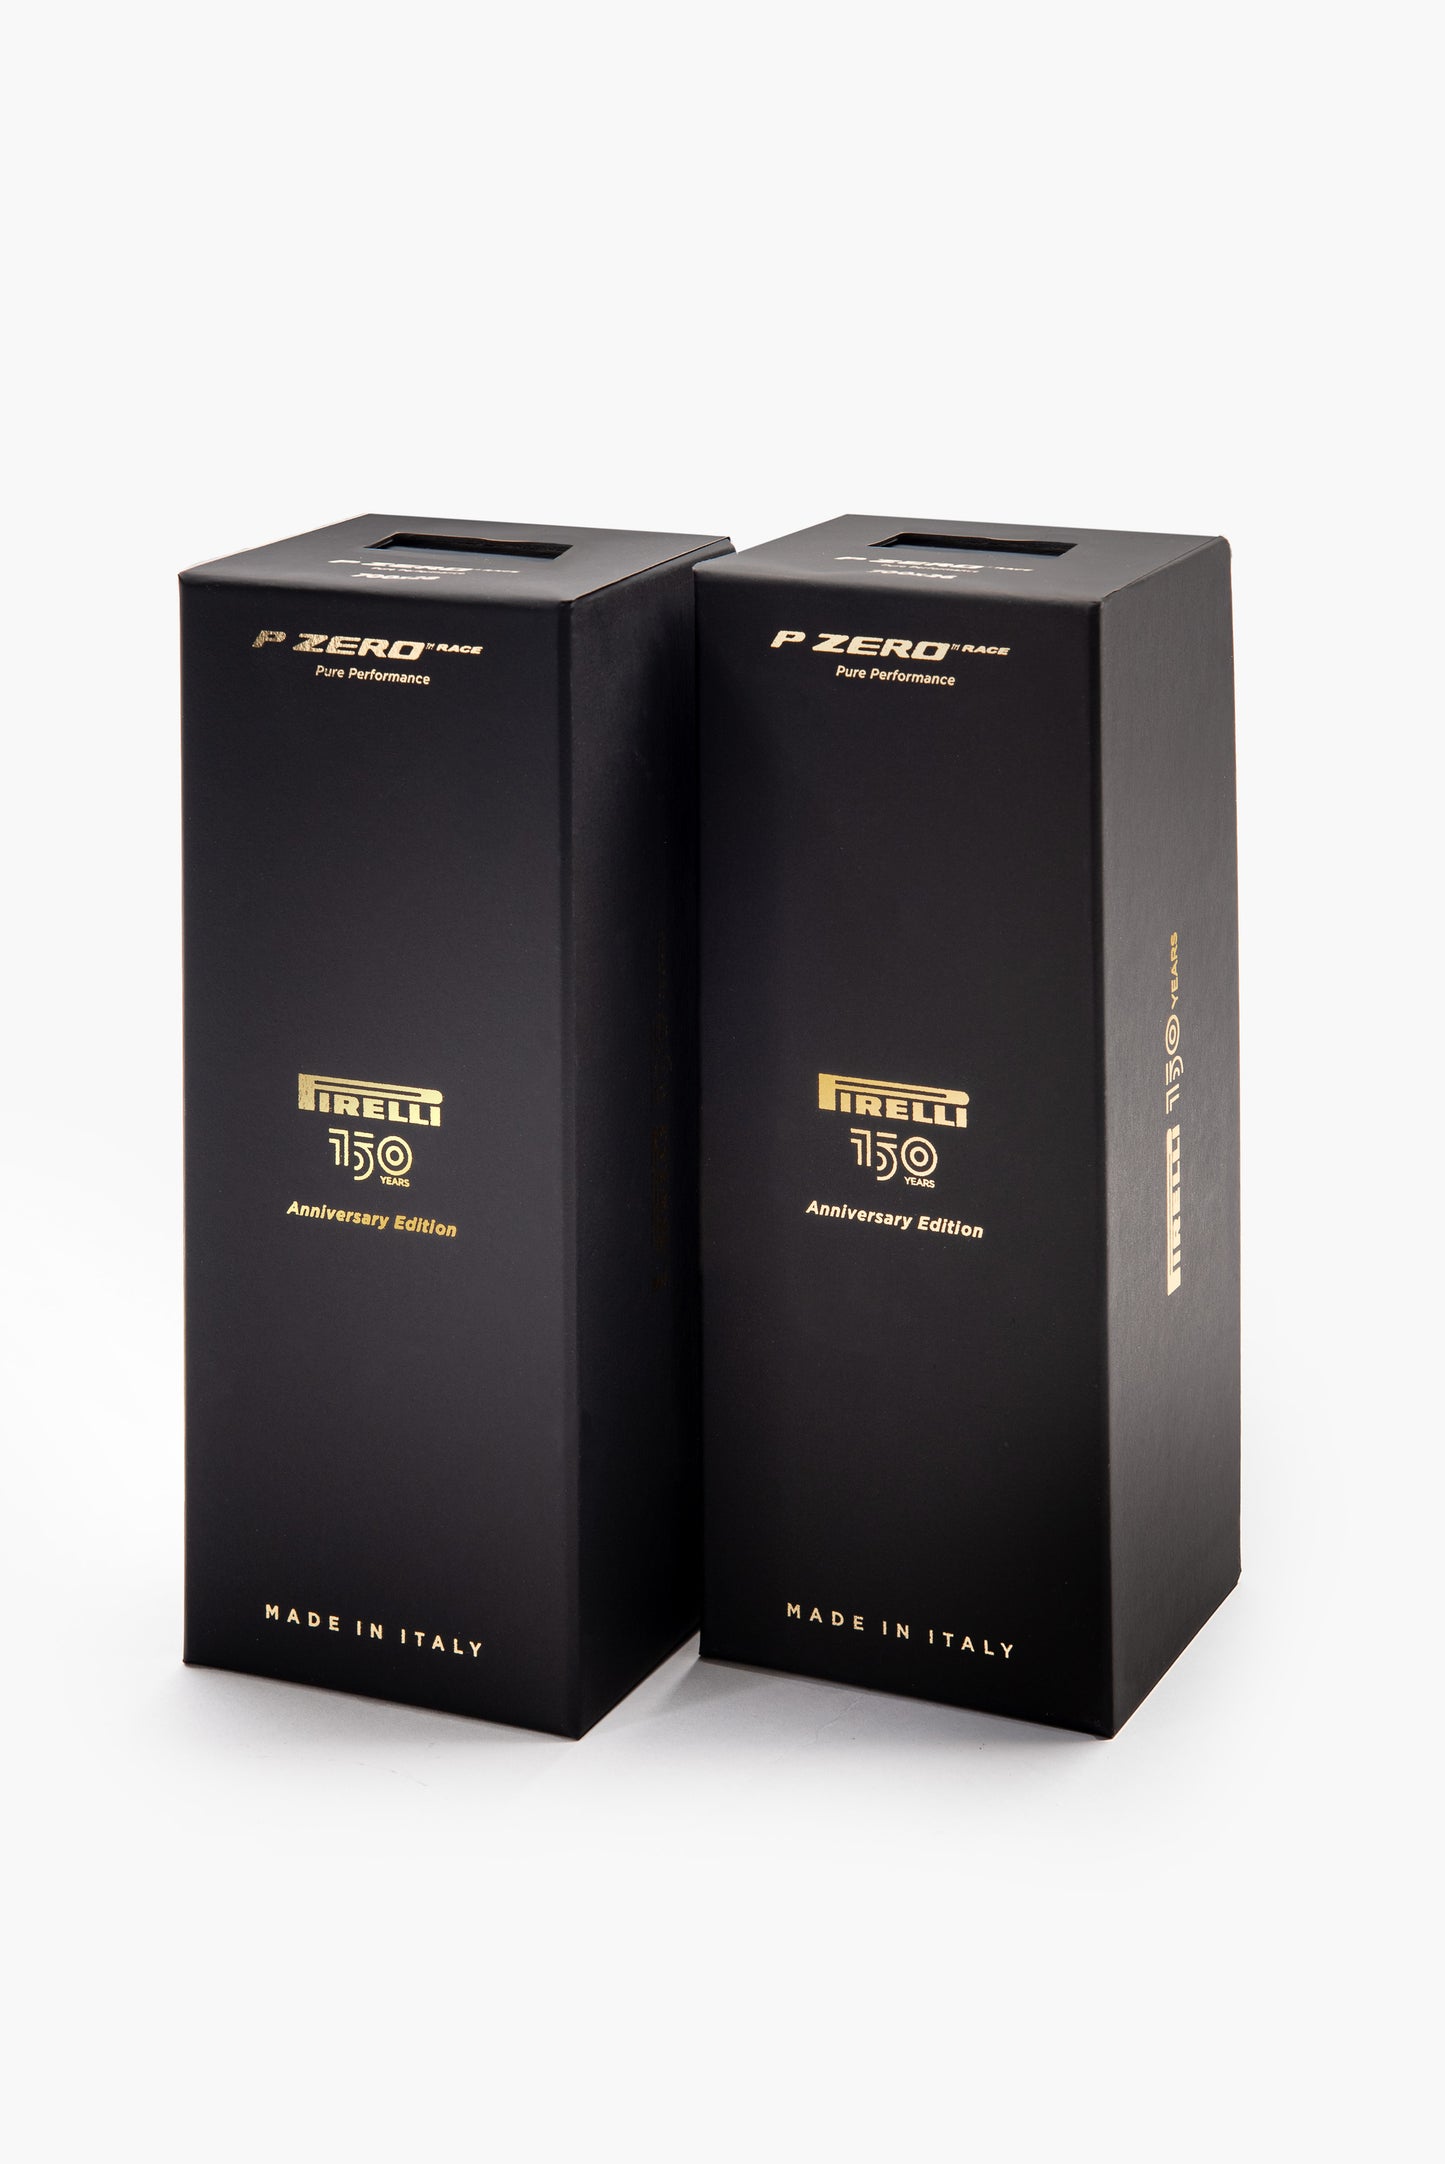 Pirelli P-Zero Race Limited Edition 150 Anniversary